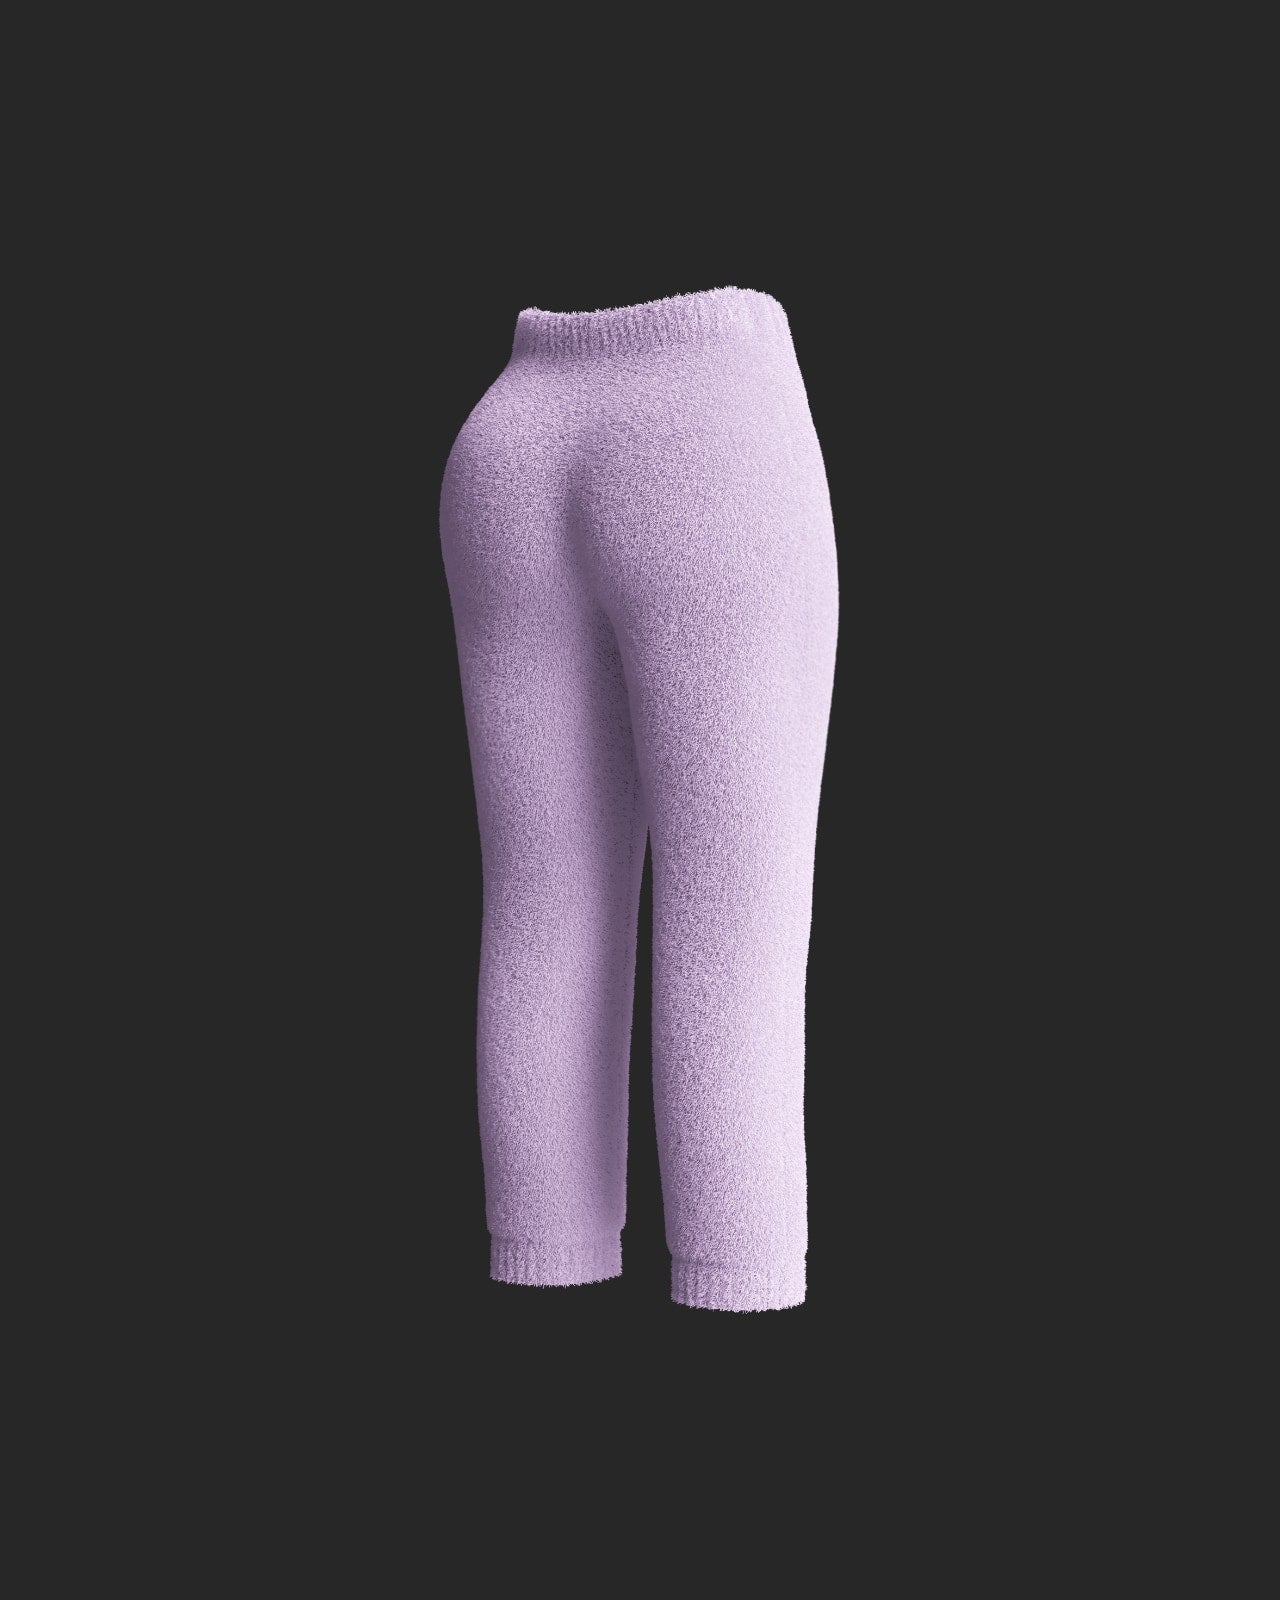 Set + Pant Bundle (4 Pieces) - Lavender